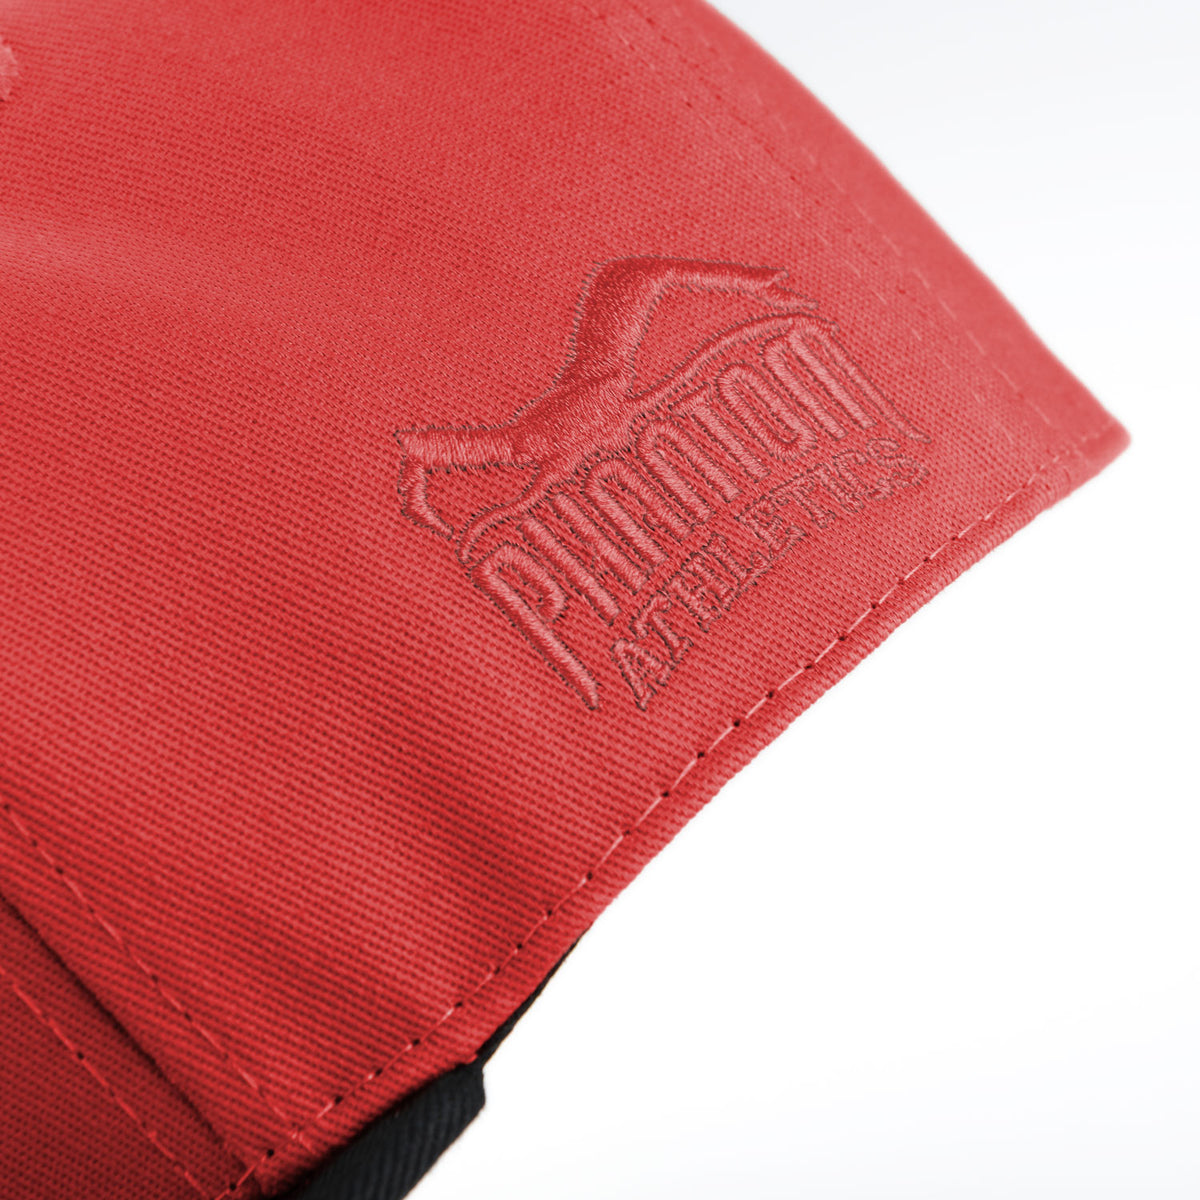 Phantom Cap für Kampfsportler. Rot/Schwarze Basecap mit flachem Schirm und hochwertig gesticktem Phantom Athletics Logo. Ideal für alle MMA Kämpfer, Boxer, BJJ Kämpfer, Thaiboxer oder Kickboxer.